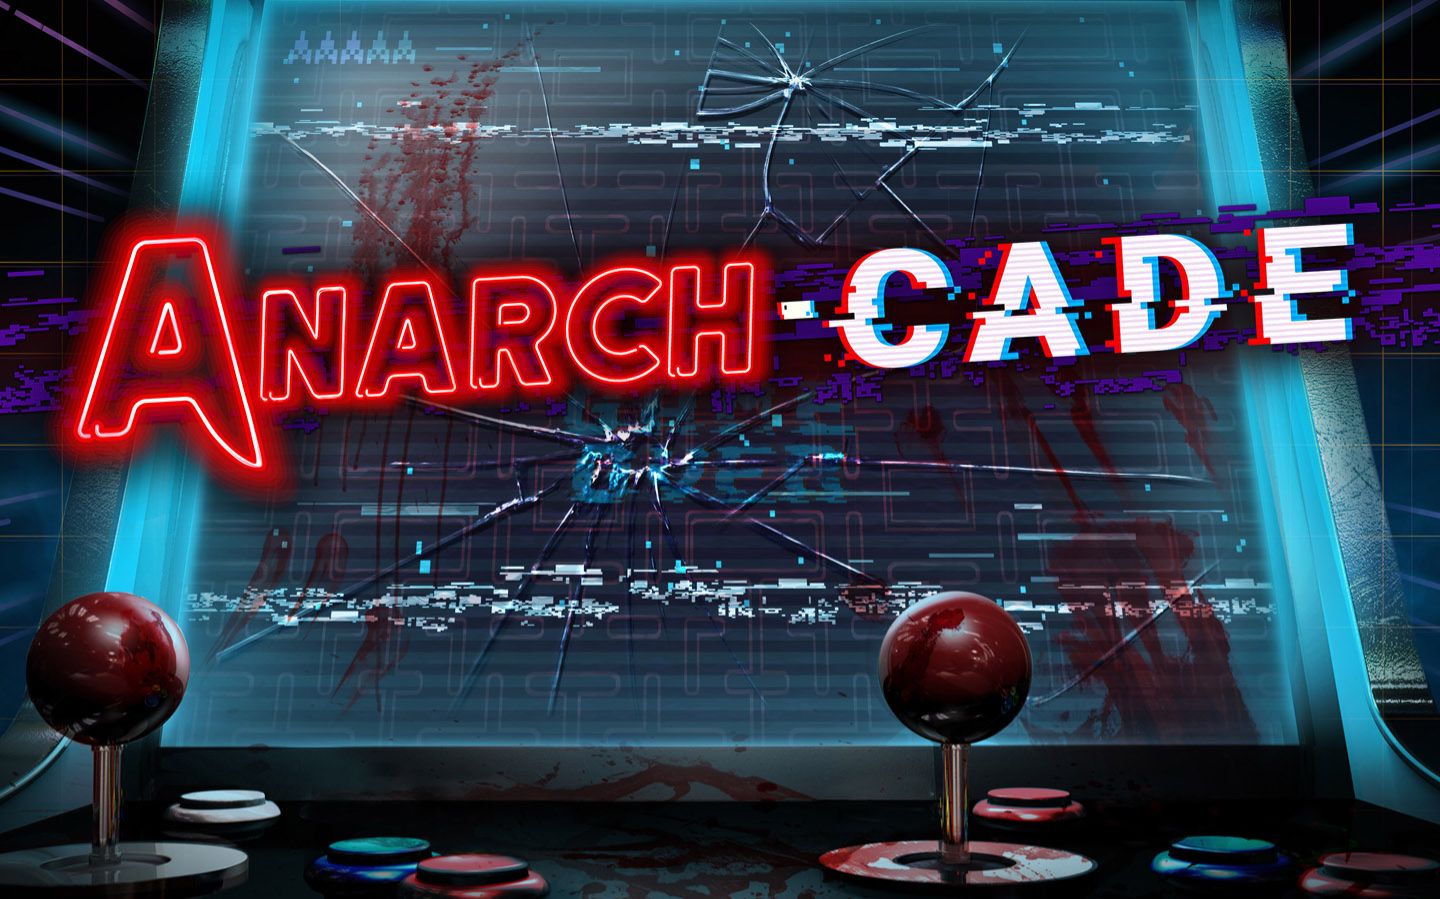 Anarch-cade Scare Zone